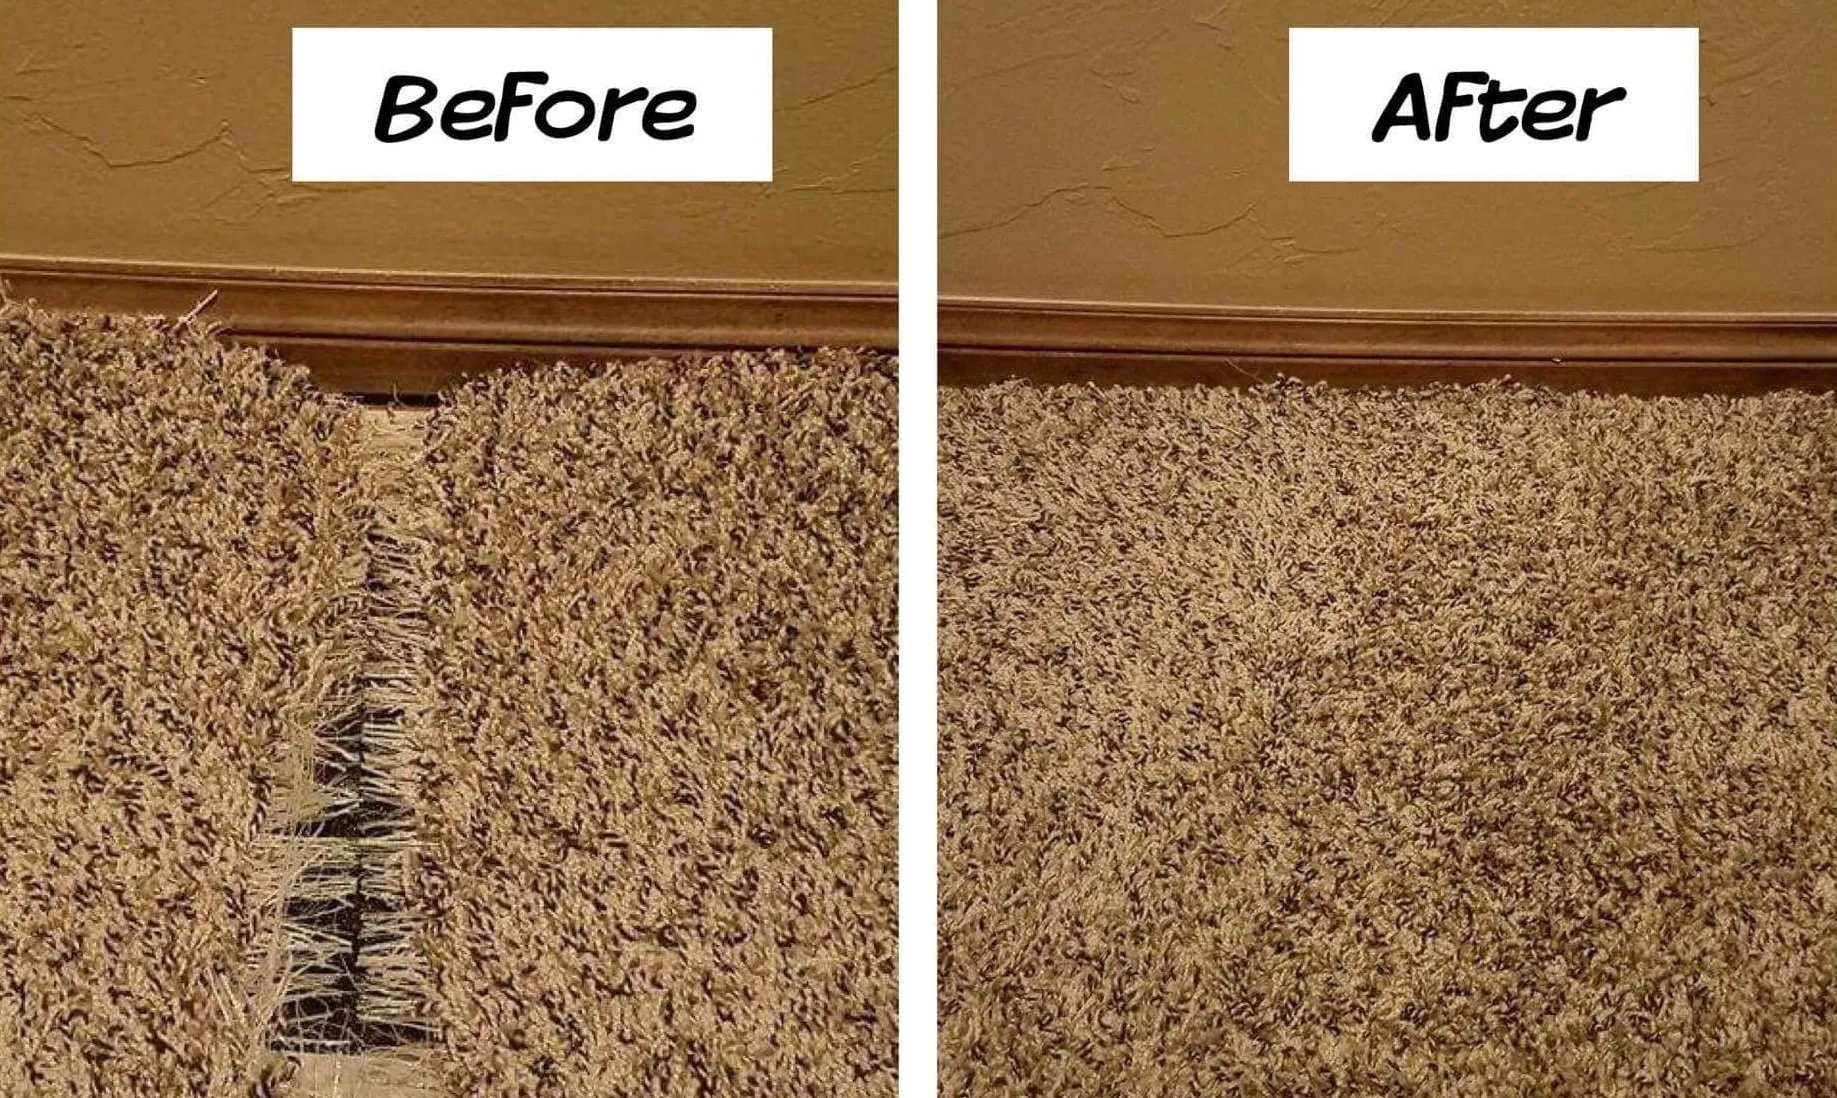 Carpet Repair & Stretching